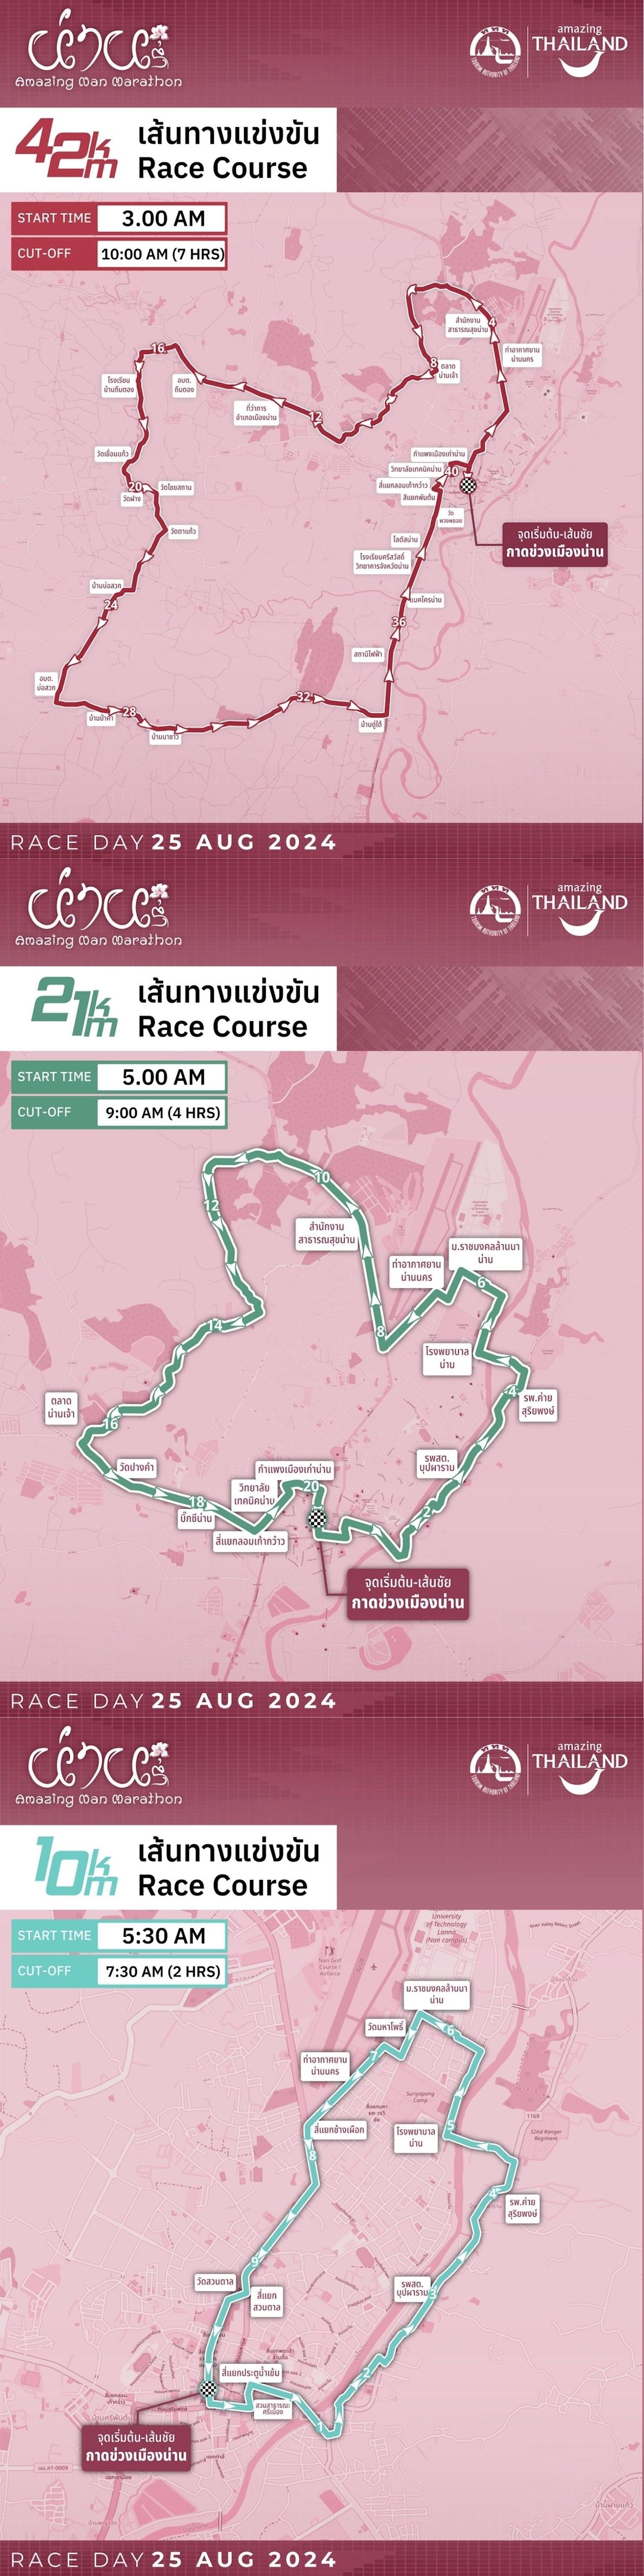 Nan Marathon Route Map